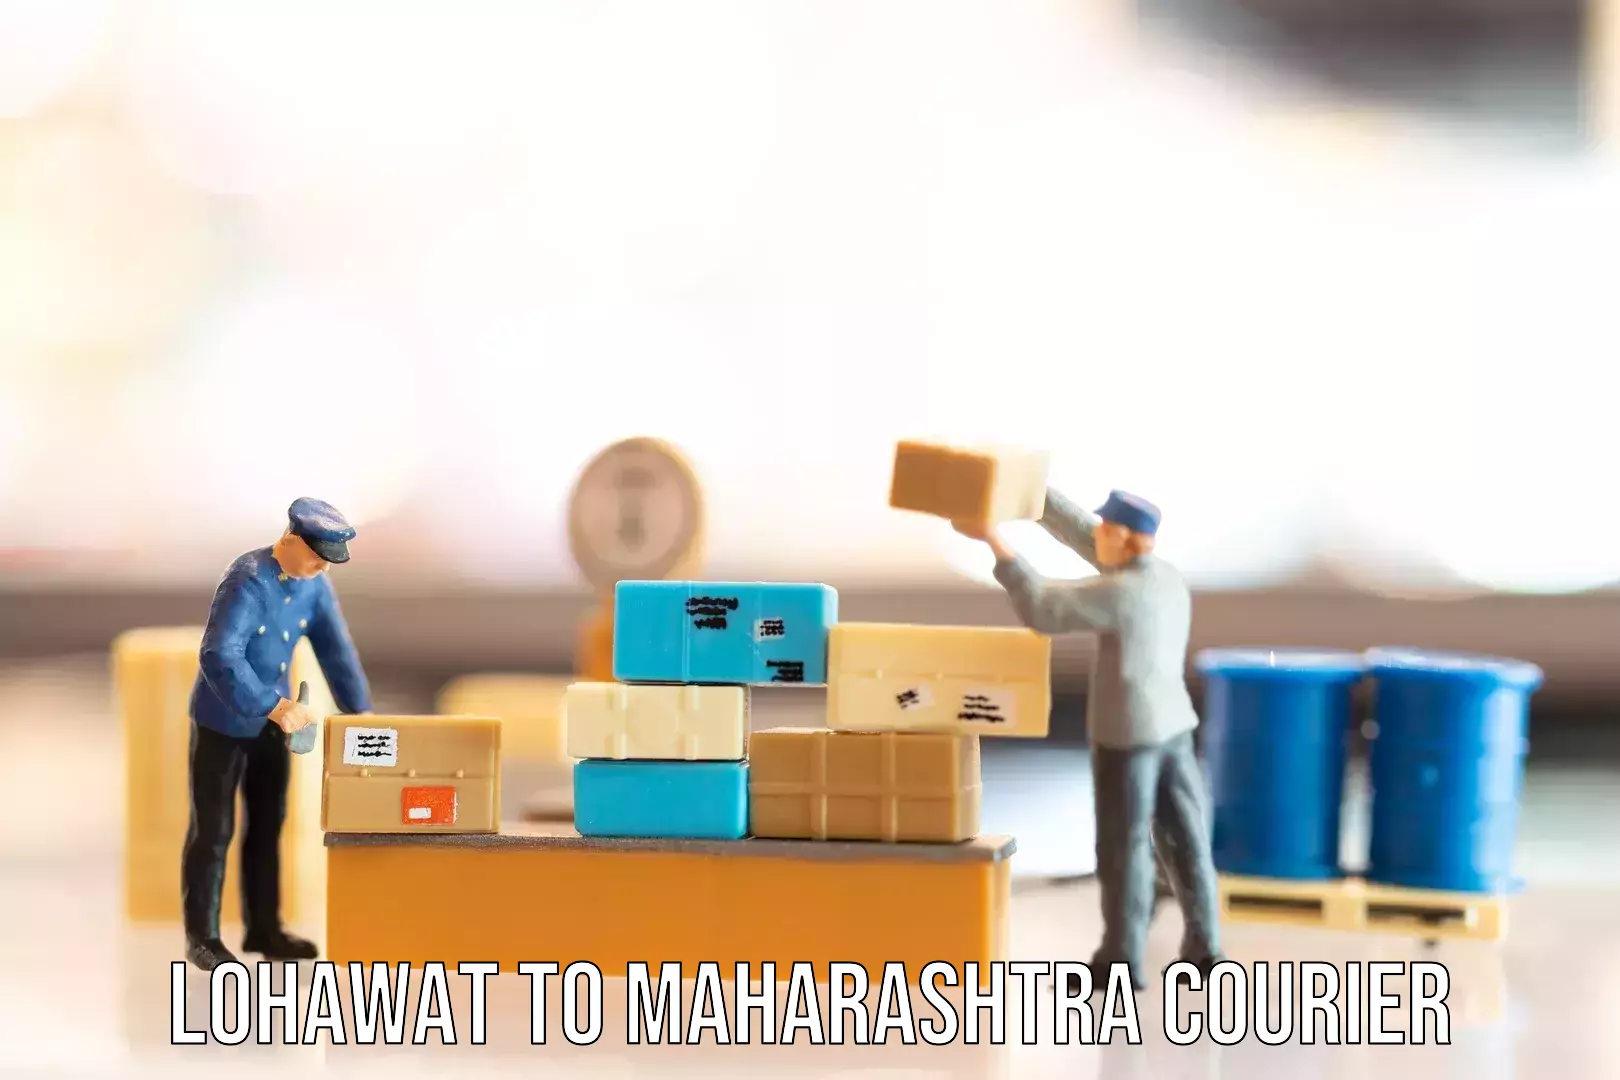 Luggage delivery optimization Lohawat to Maharashtra